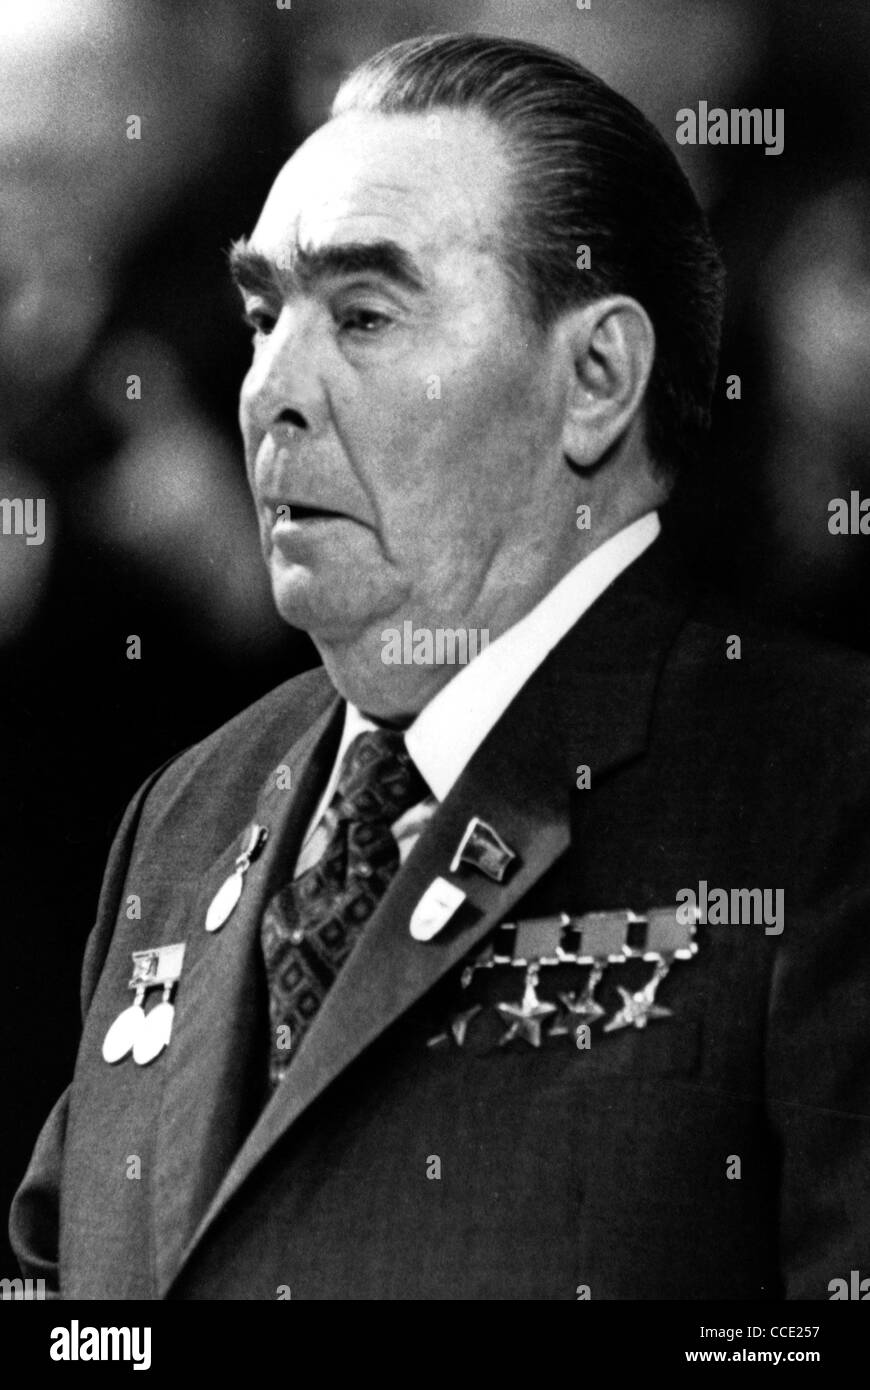 Porträt des sowjetischen Staat und Partei Führer Leonid Brezhnev von 1977. Stockfoto